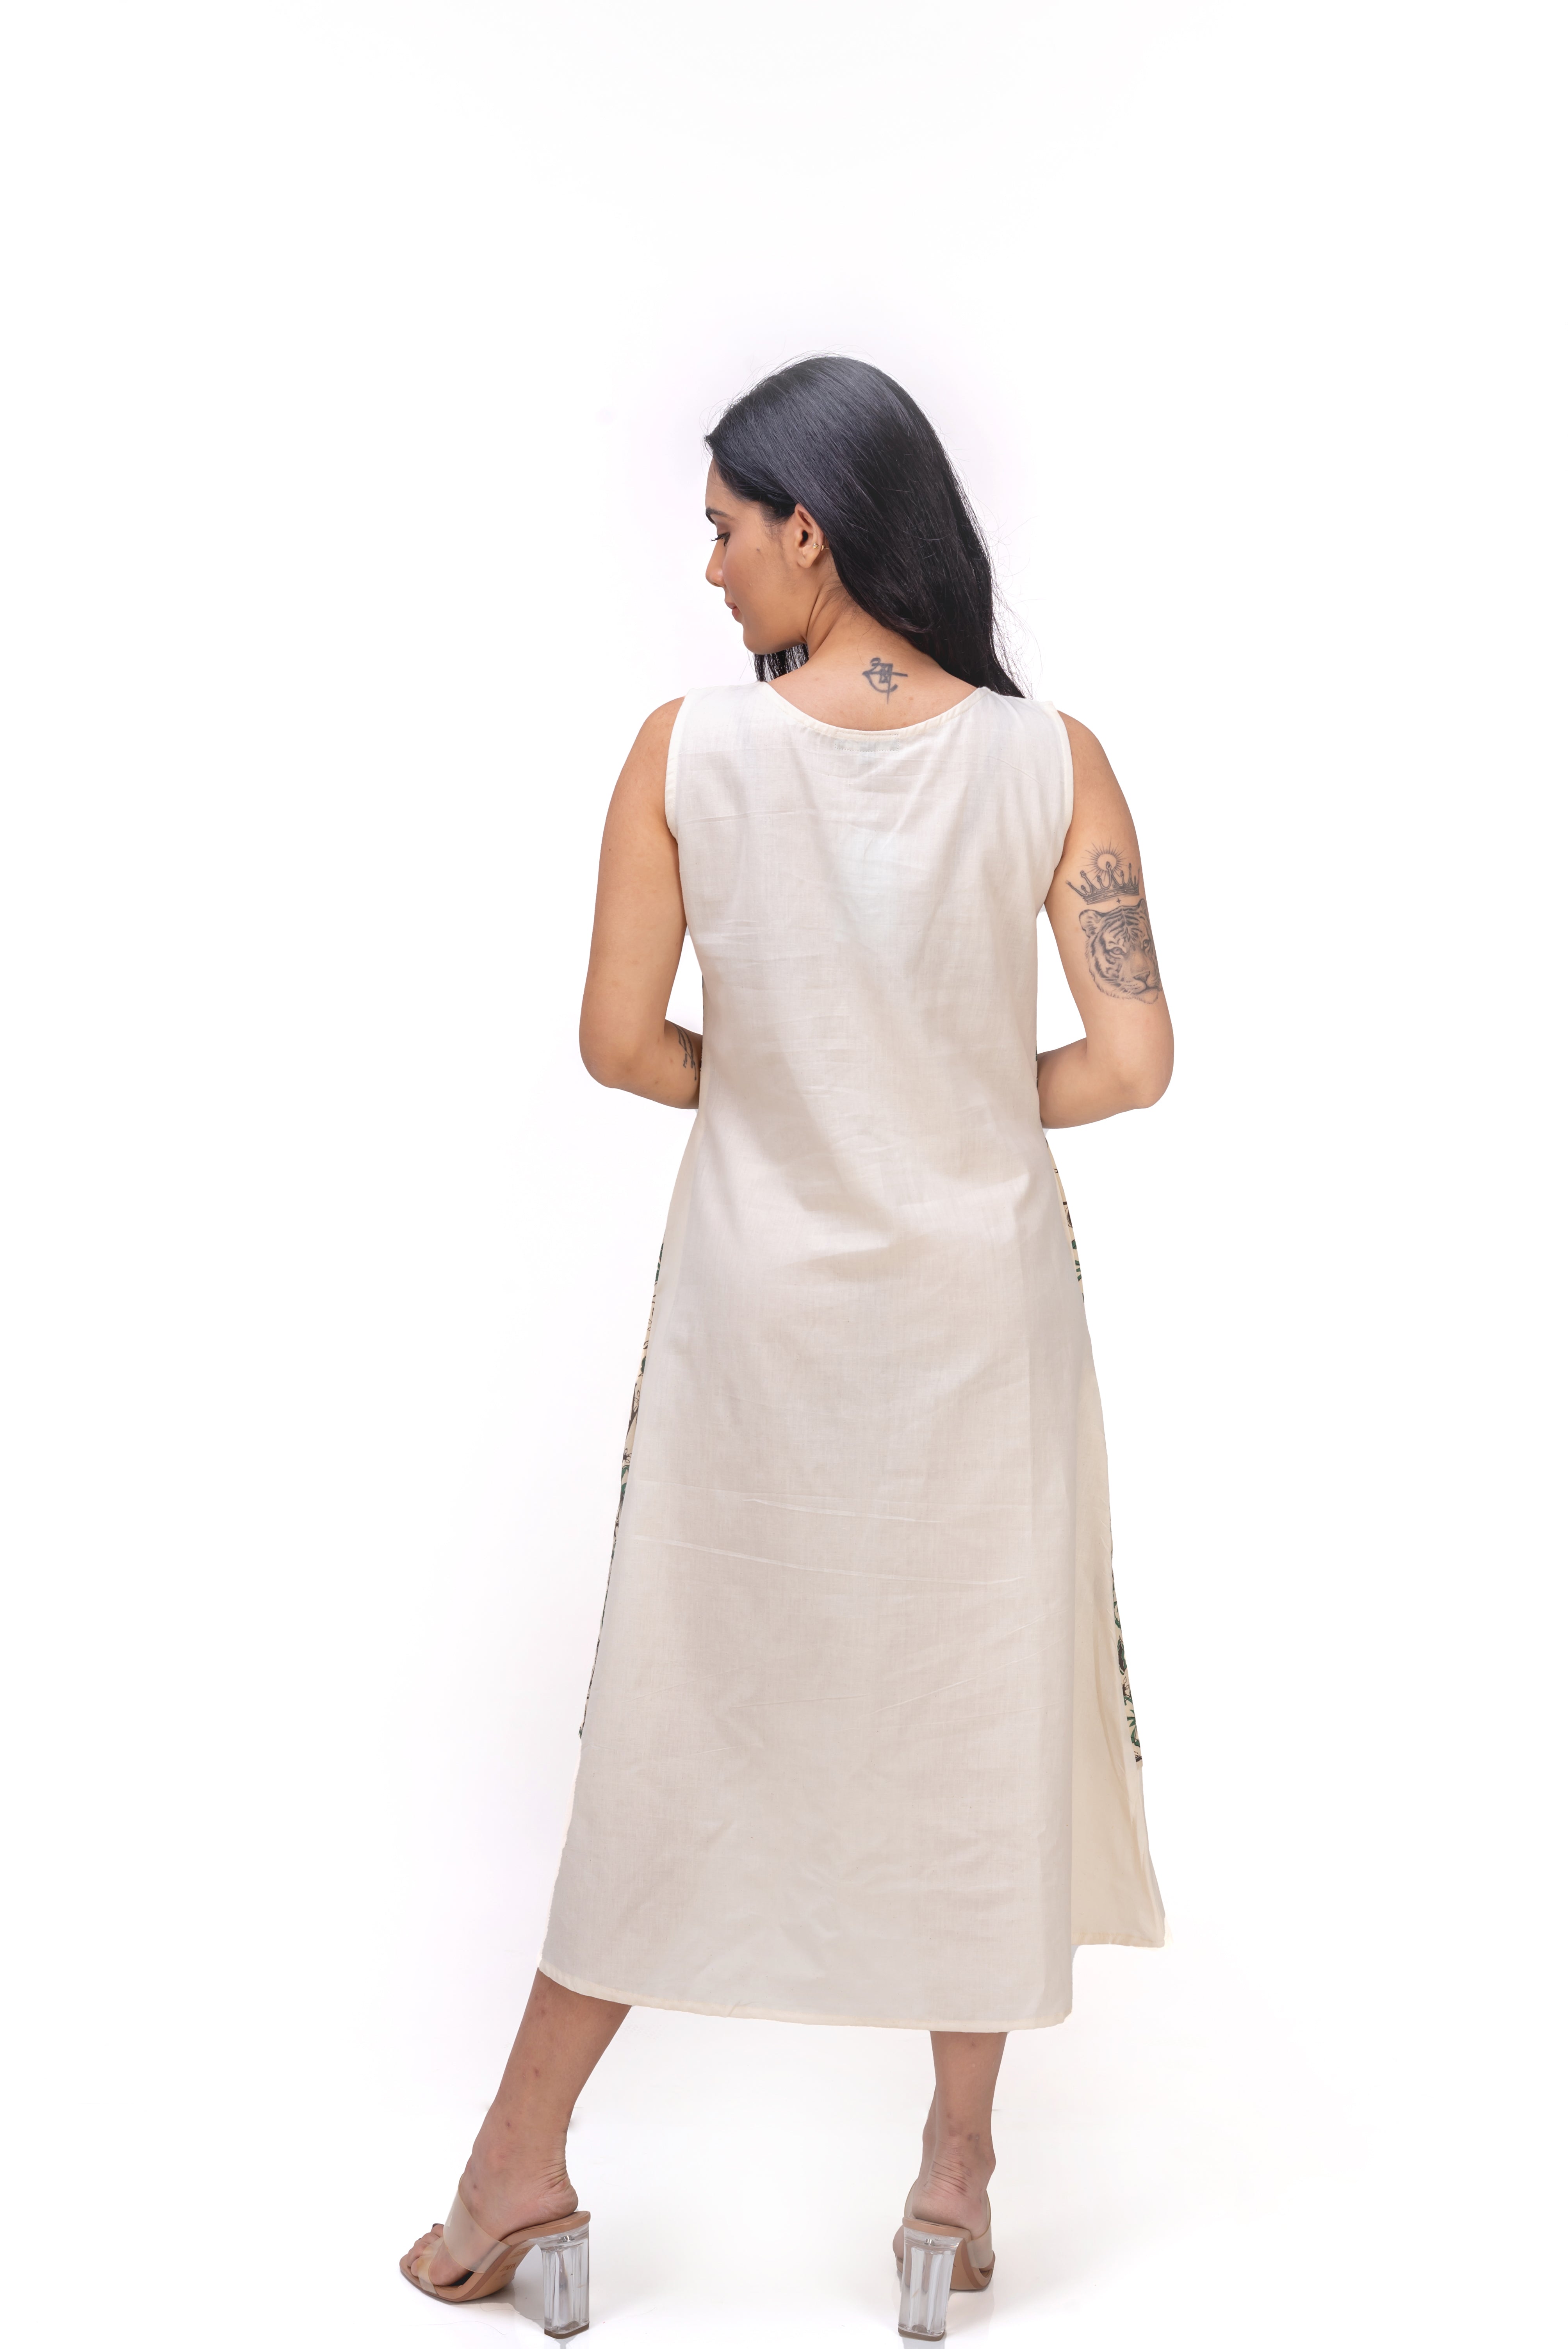 407-166 "Ethal" Whitelotus women's Layered Maxi Dress